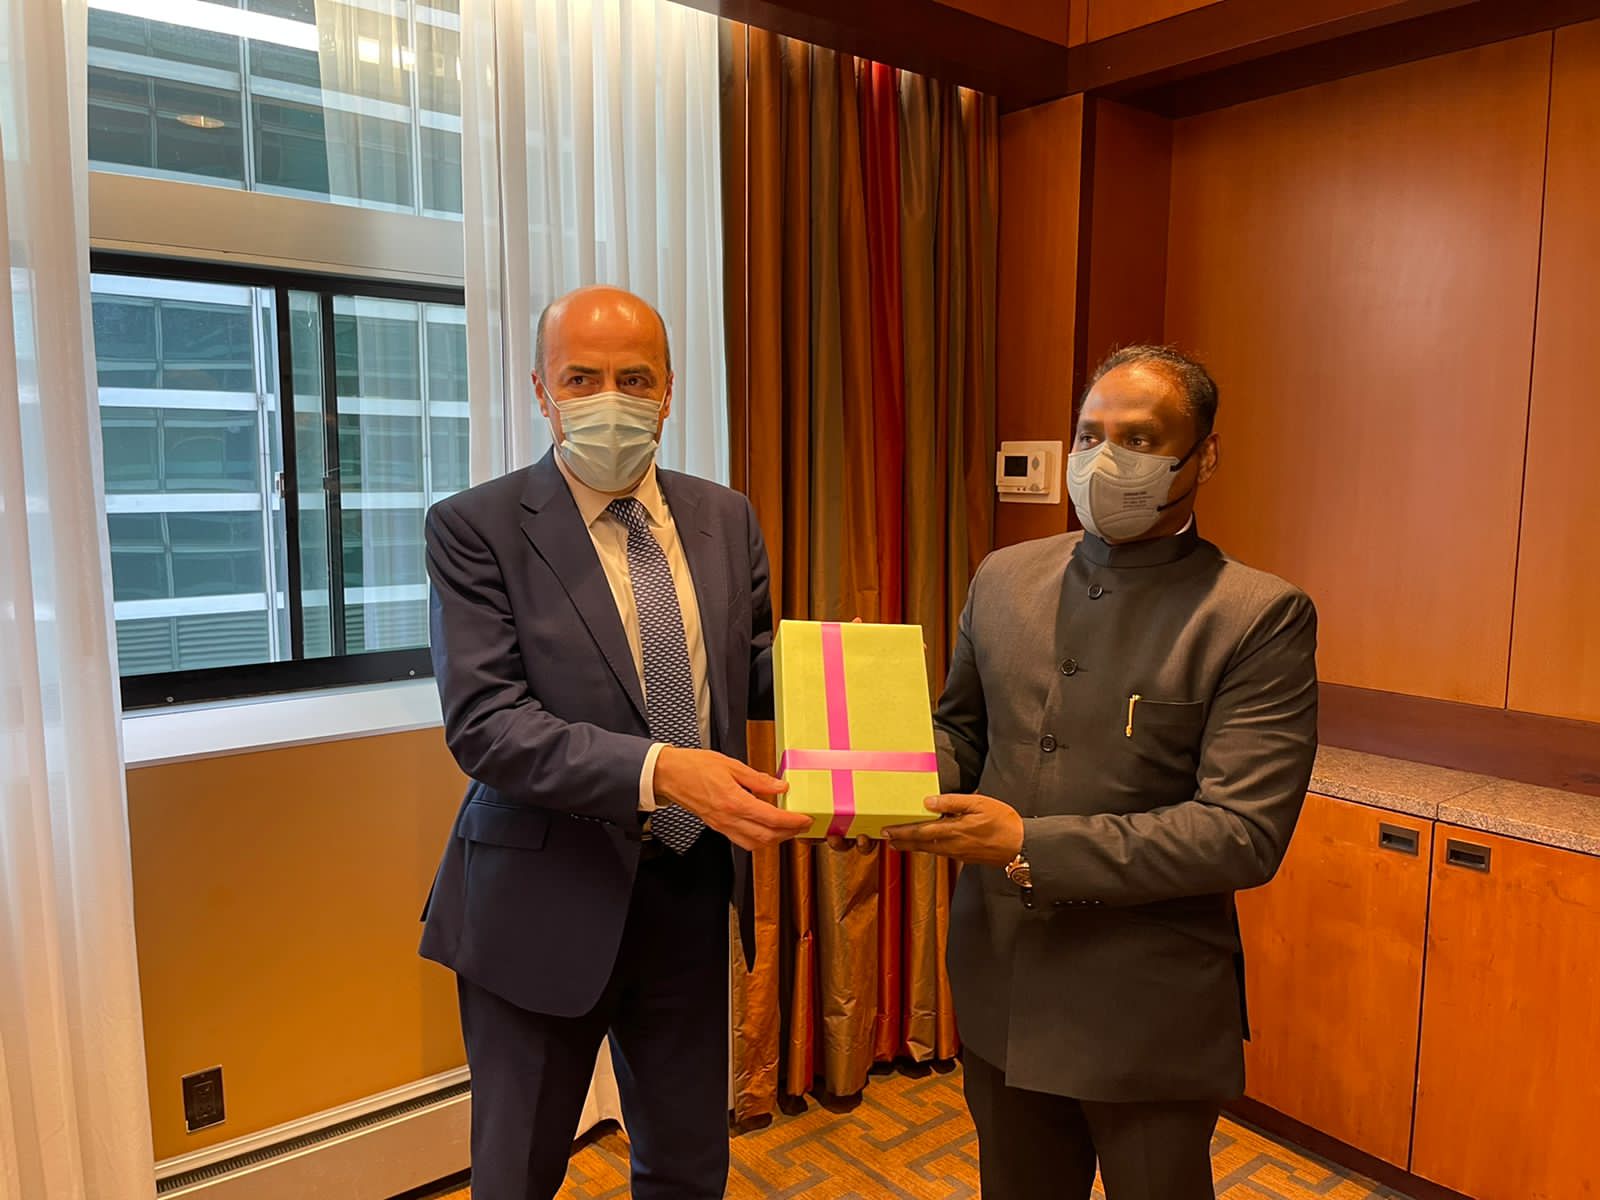 भारत के सीएजी, श्री गिरीश चंद्र मुर्मू और सीनियर जॉर्ज बरमूडेज़ सोटो - चिली गणराज्य के नियंत्रक जनरल के बीच 6-7 दिसंबर, 2021 को आयोजित संयुक्त राष्ट्र पैनल की बैठक के दौरान द्विपक्षीय बैठक हुई।